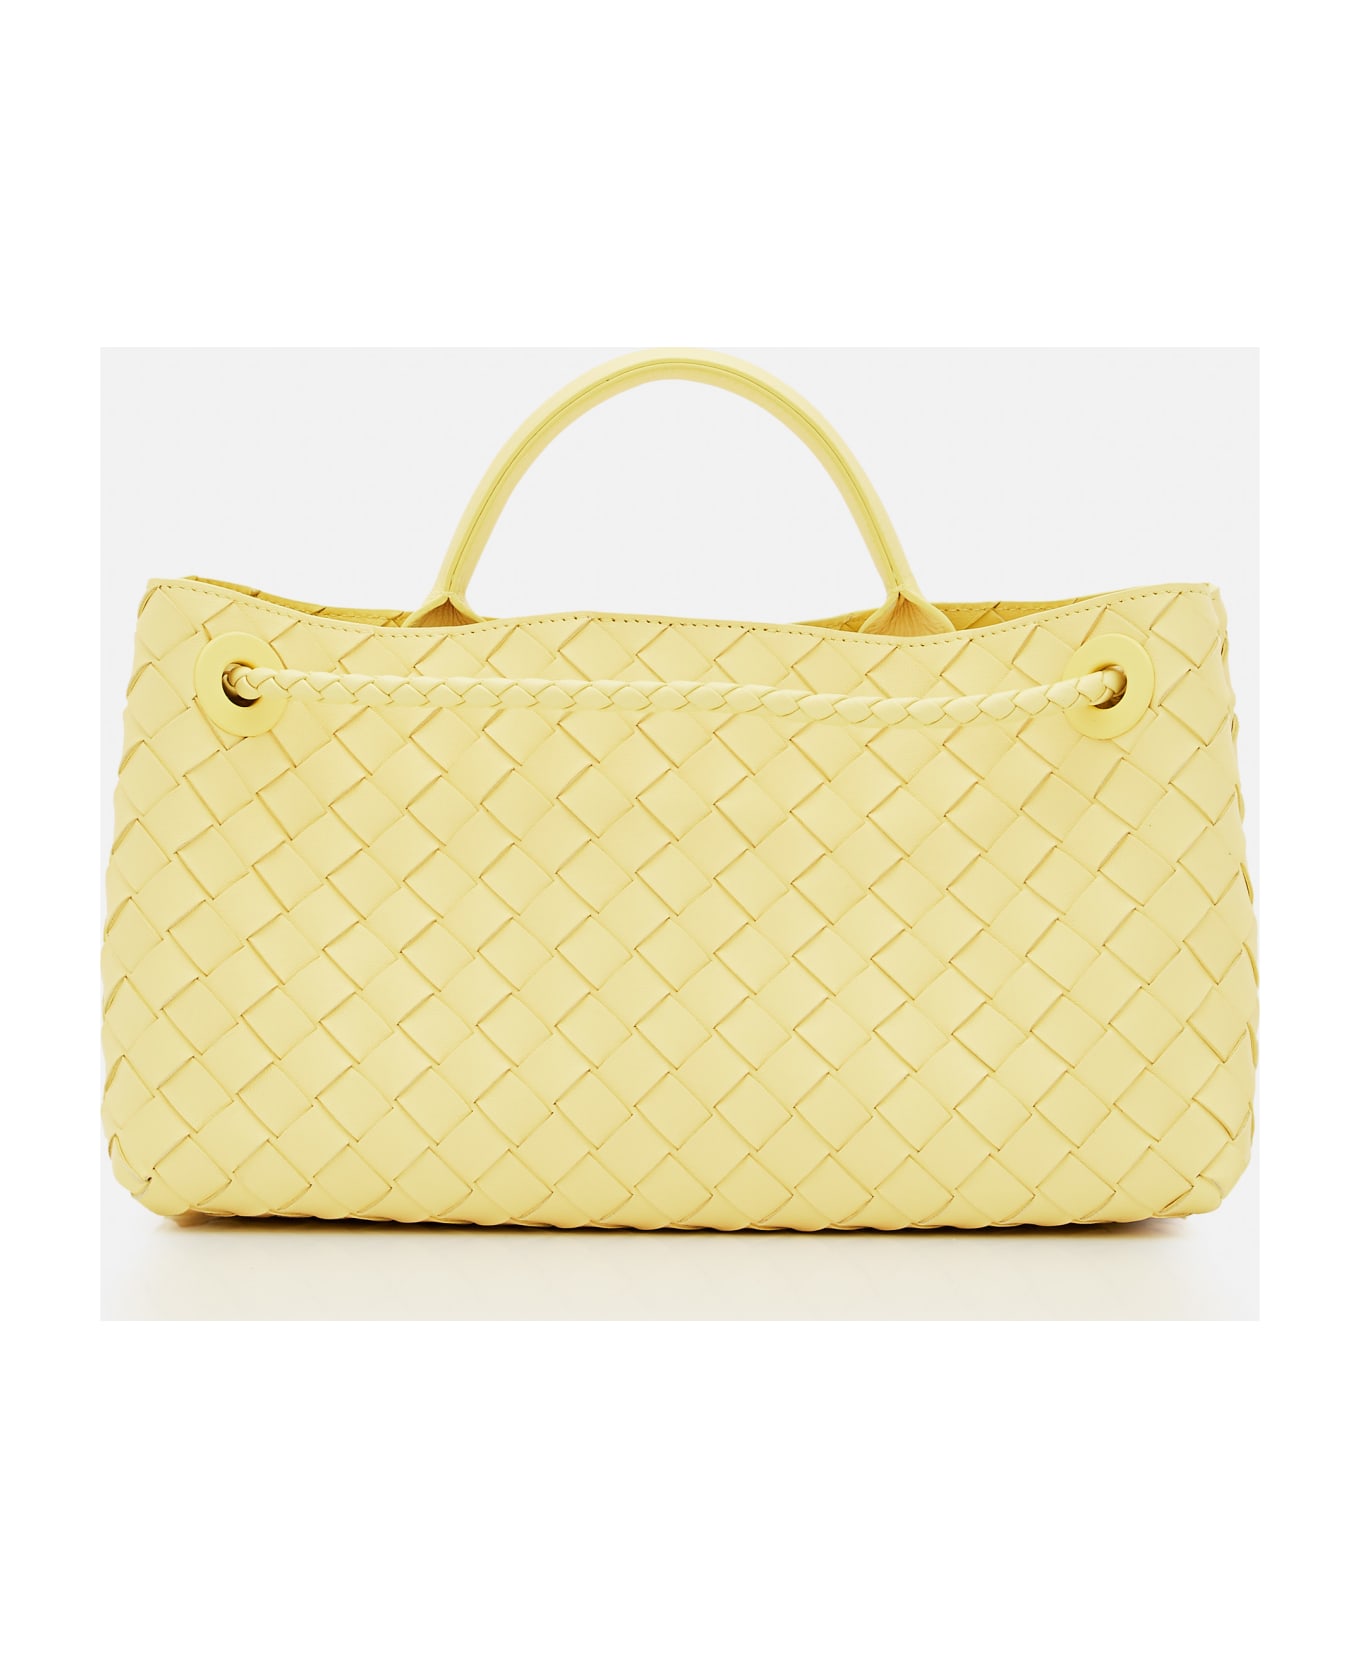 Bottega Veneta East West Andiamo Leather Handbag - Yellow トートバッグ